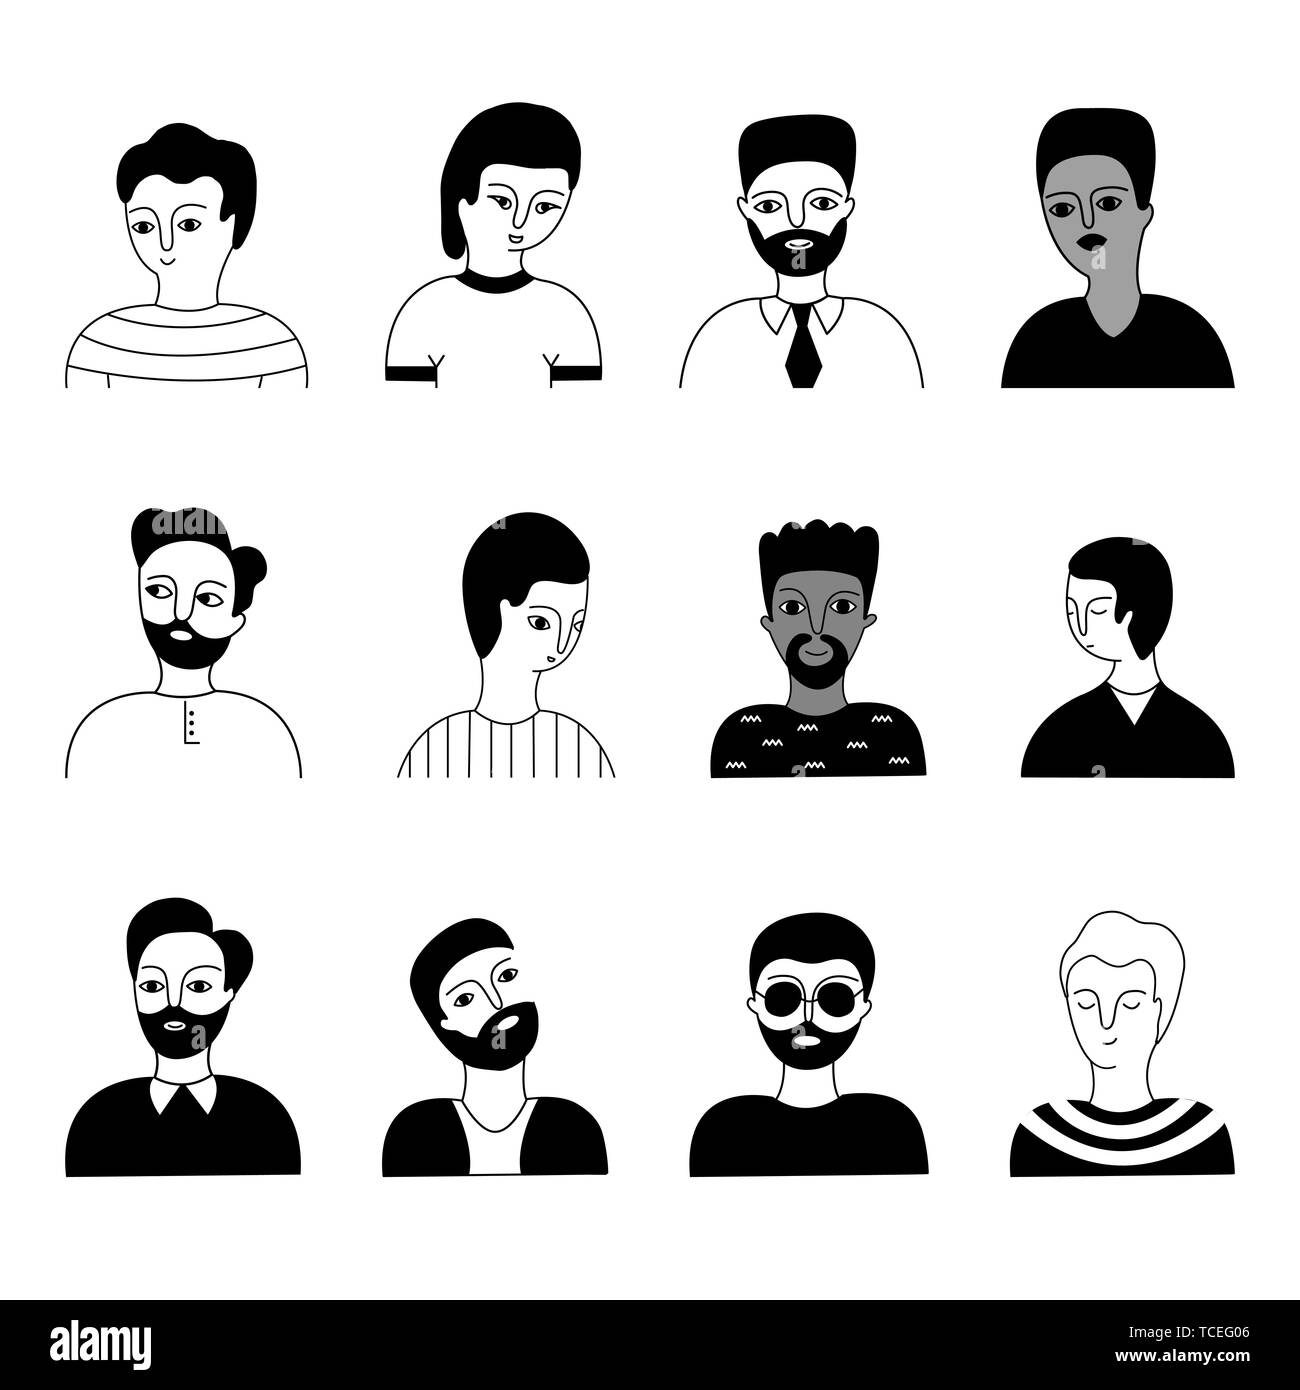 Eine multikulturelle Gruppe von Menschen Gesichter (Muslim, Asiatischen, Europäischen) auf einem weißen Hintergrund. Soziale Vielfalt. Doodle cartoon Vector Illustration. Stock Vektor